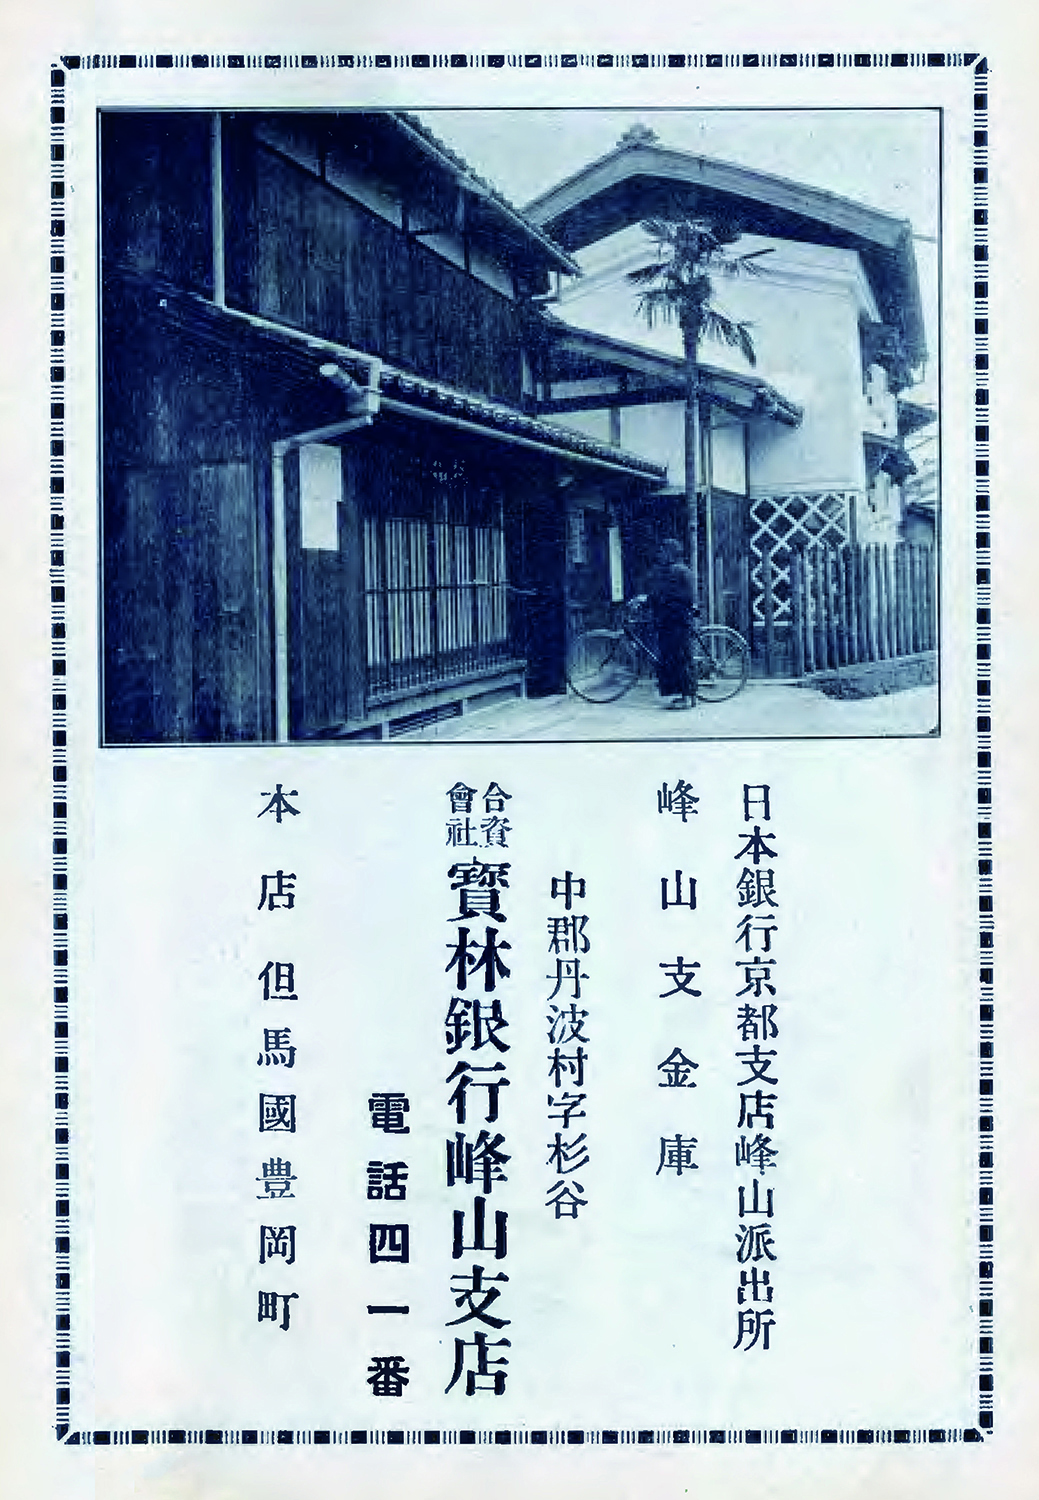 實林銀行峰山支店's image 1